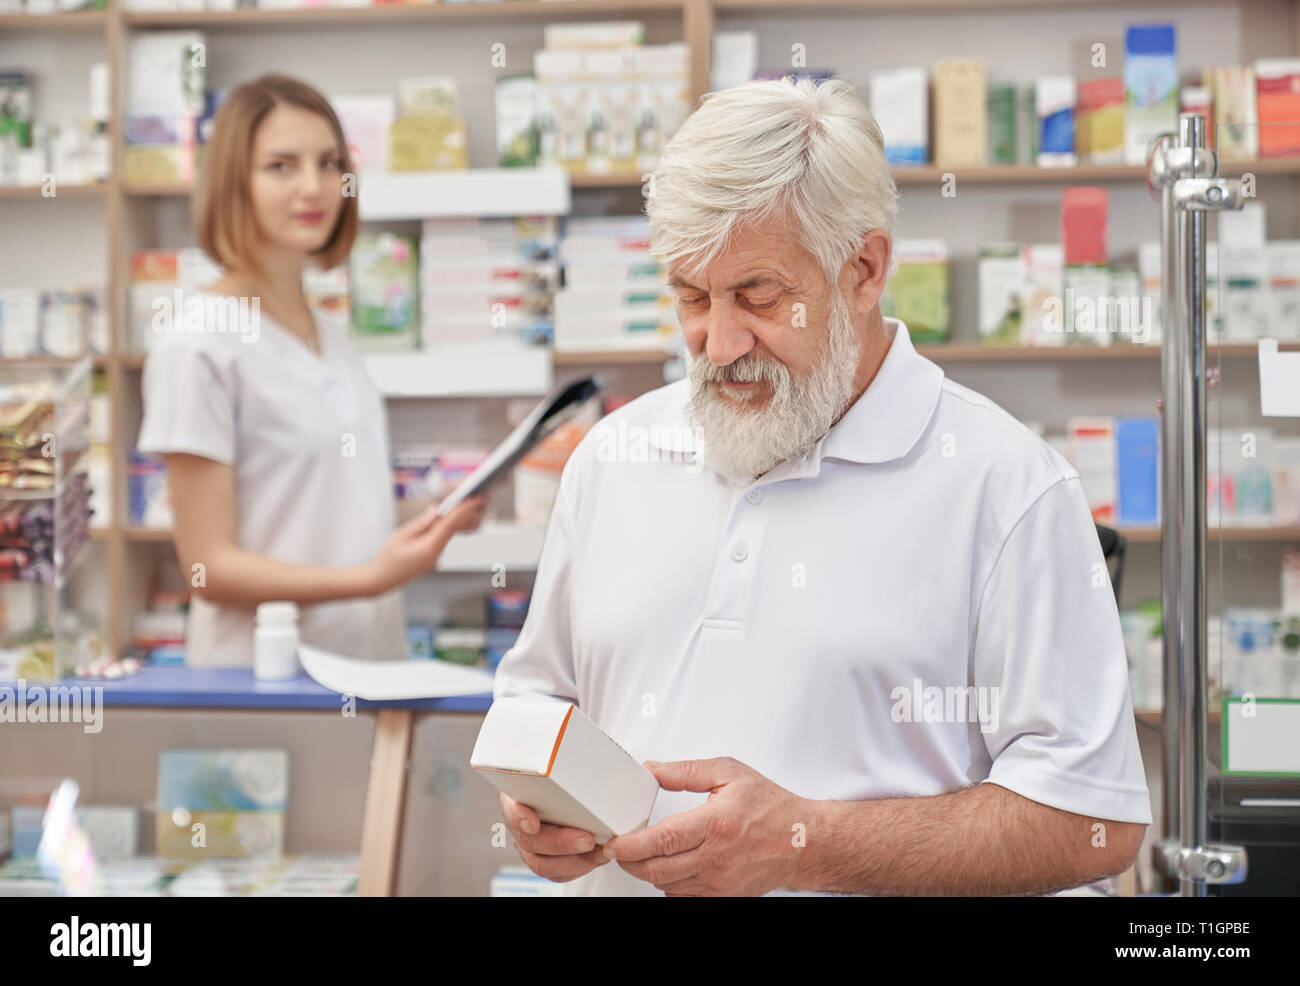 Uomo anziano scegliendo i medicamenti in farmacia, pensando. Titolare di pensione o di rendita barbuto in bianco t shirt azienda cassetta medica, guardando verso il basso. Il farmacista femmina permanente al contatore in farmacia. Foto Stock